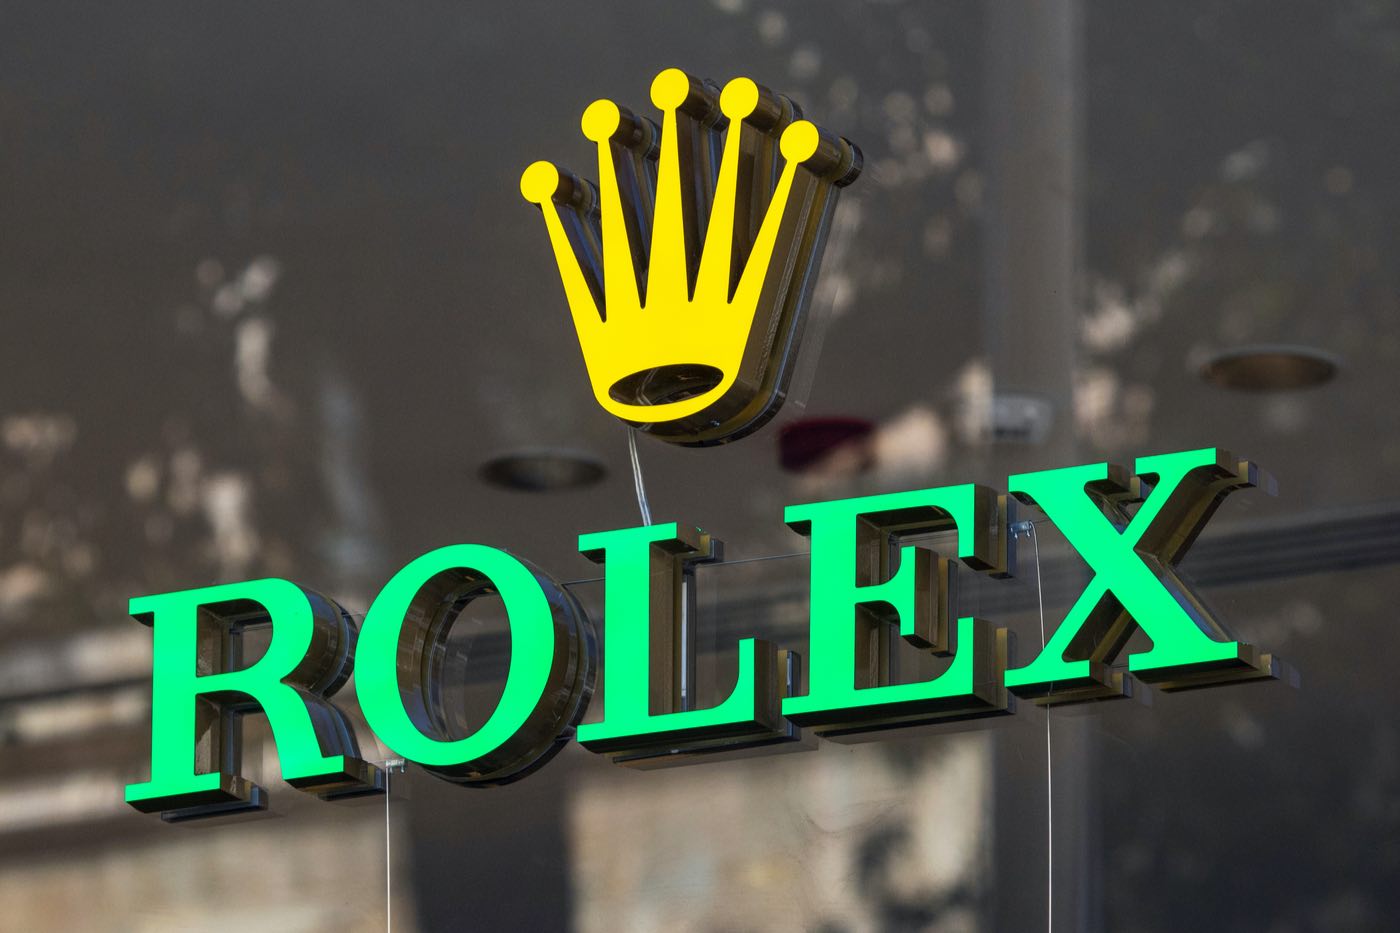 Cómo Rolex se convirtió en la marca de relojes de lujo #1 del mundo.